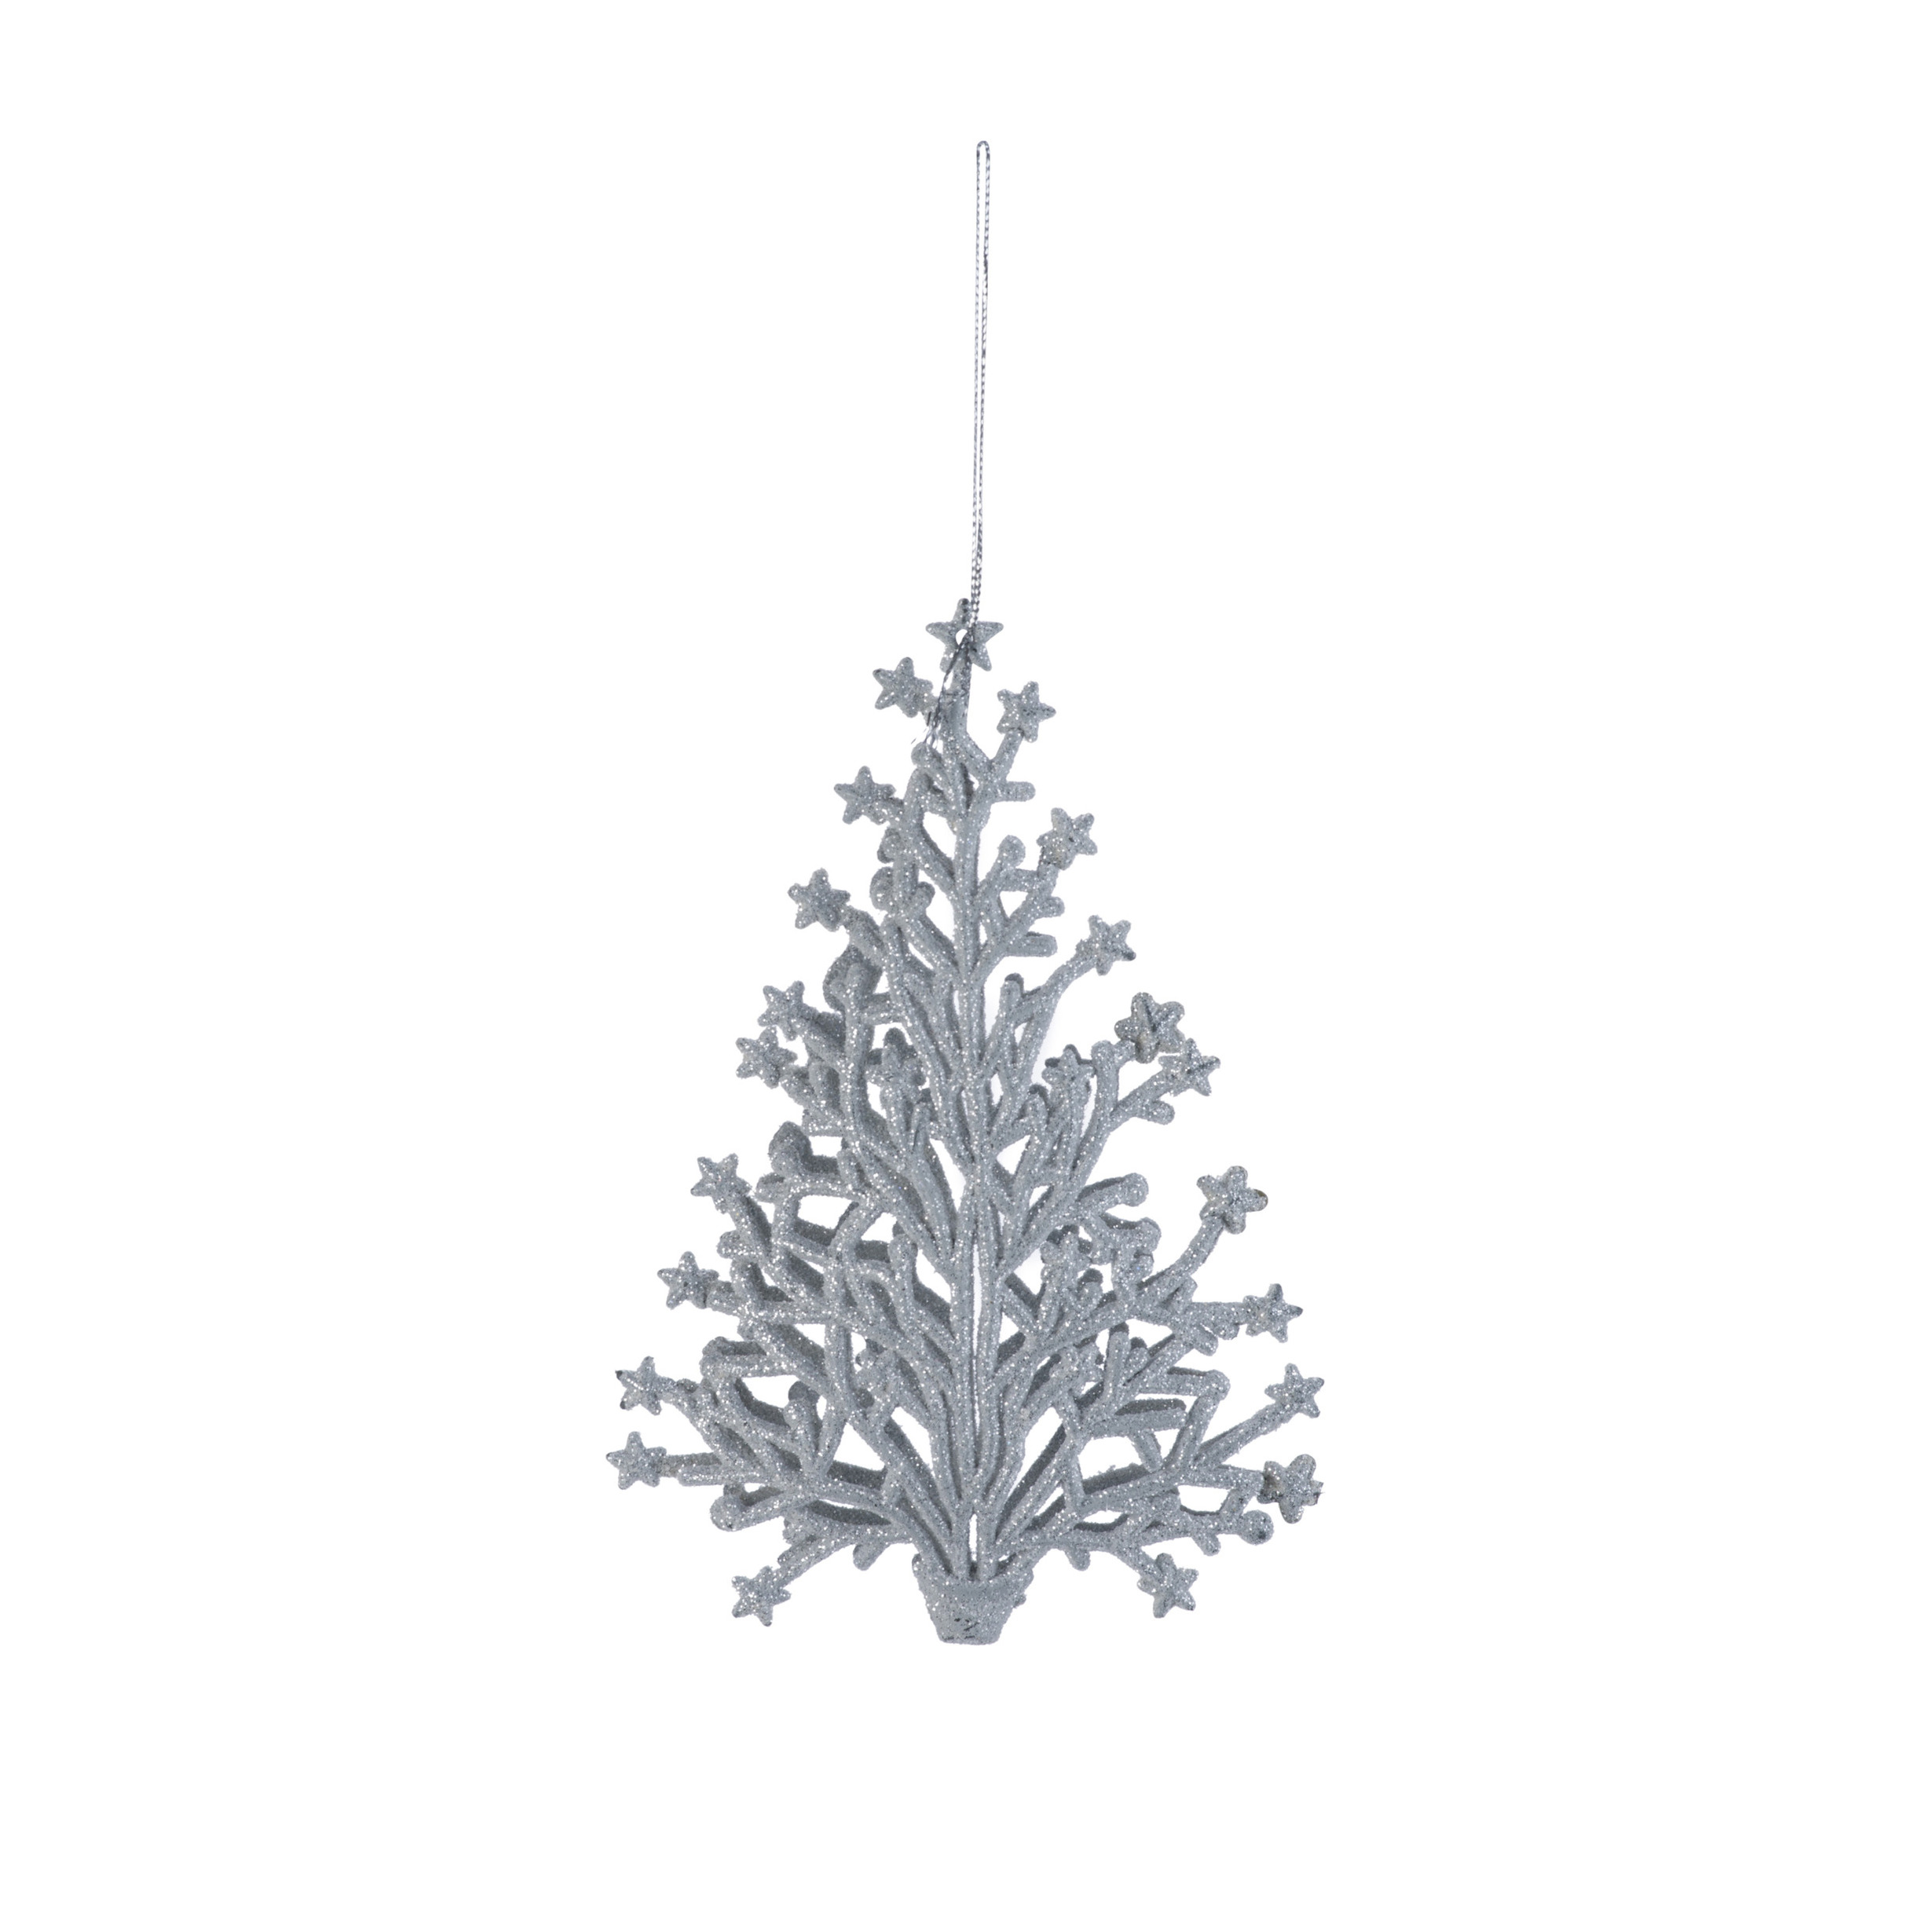 1x stuks kunststof kersthangers kerstboom zilver glitter 15 cm kerstornamenten